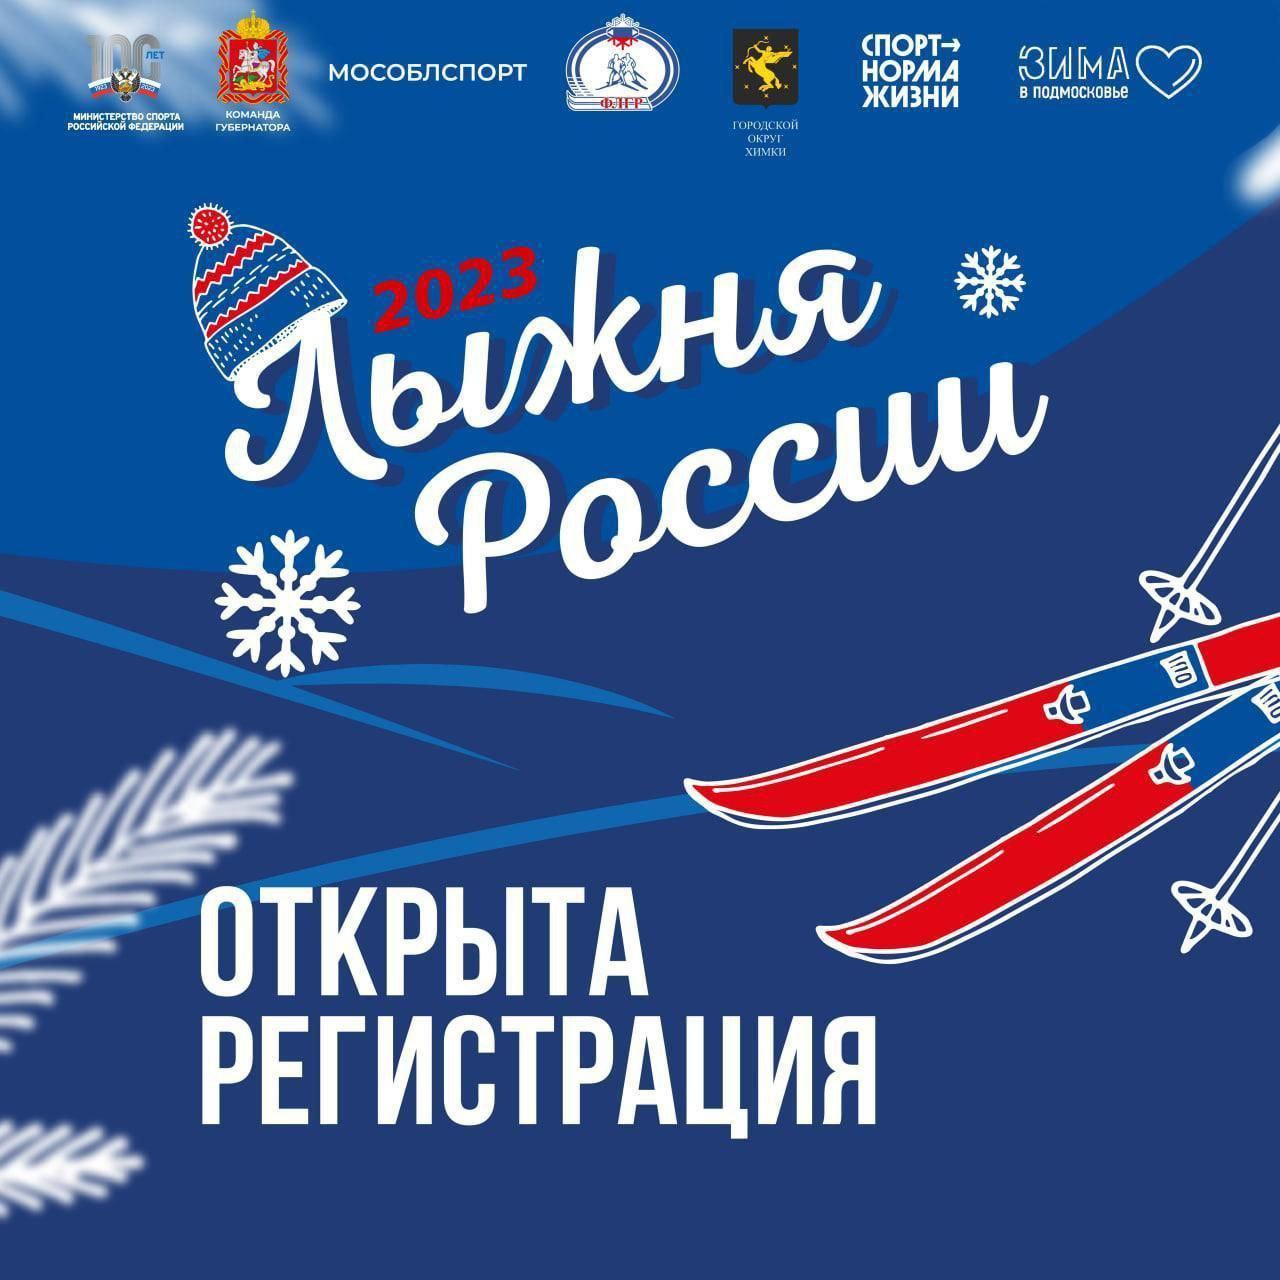 Открыт прием заявок на участие в 41-м всероссийском старте Лыжни России